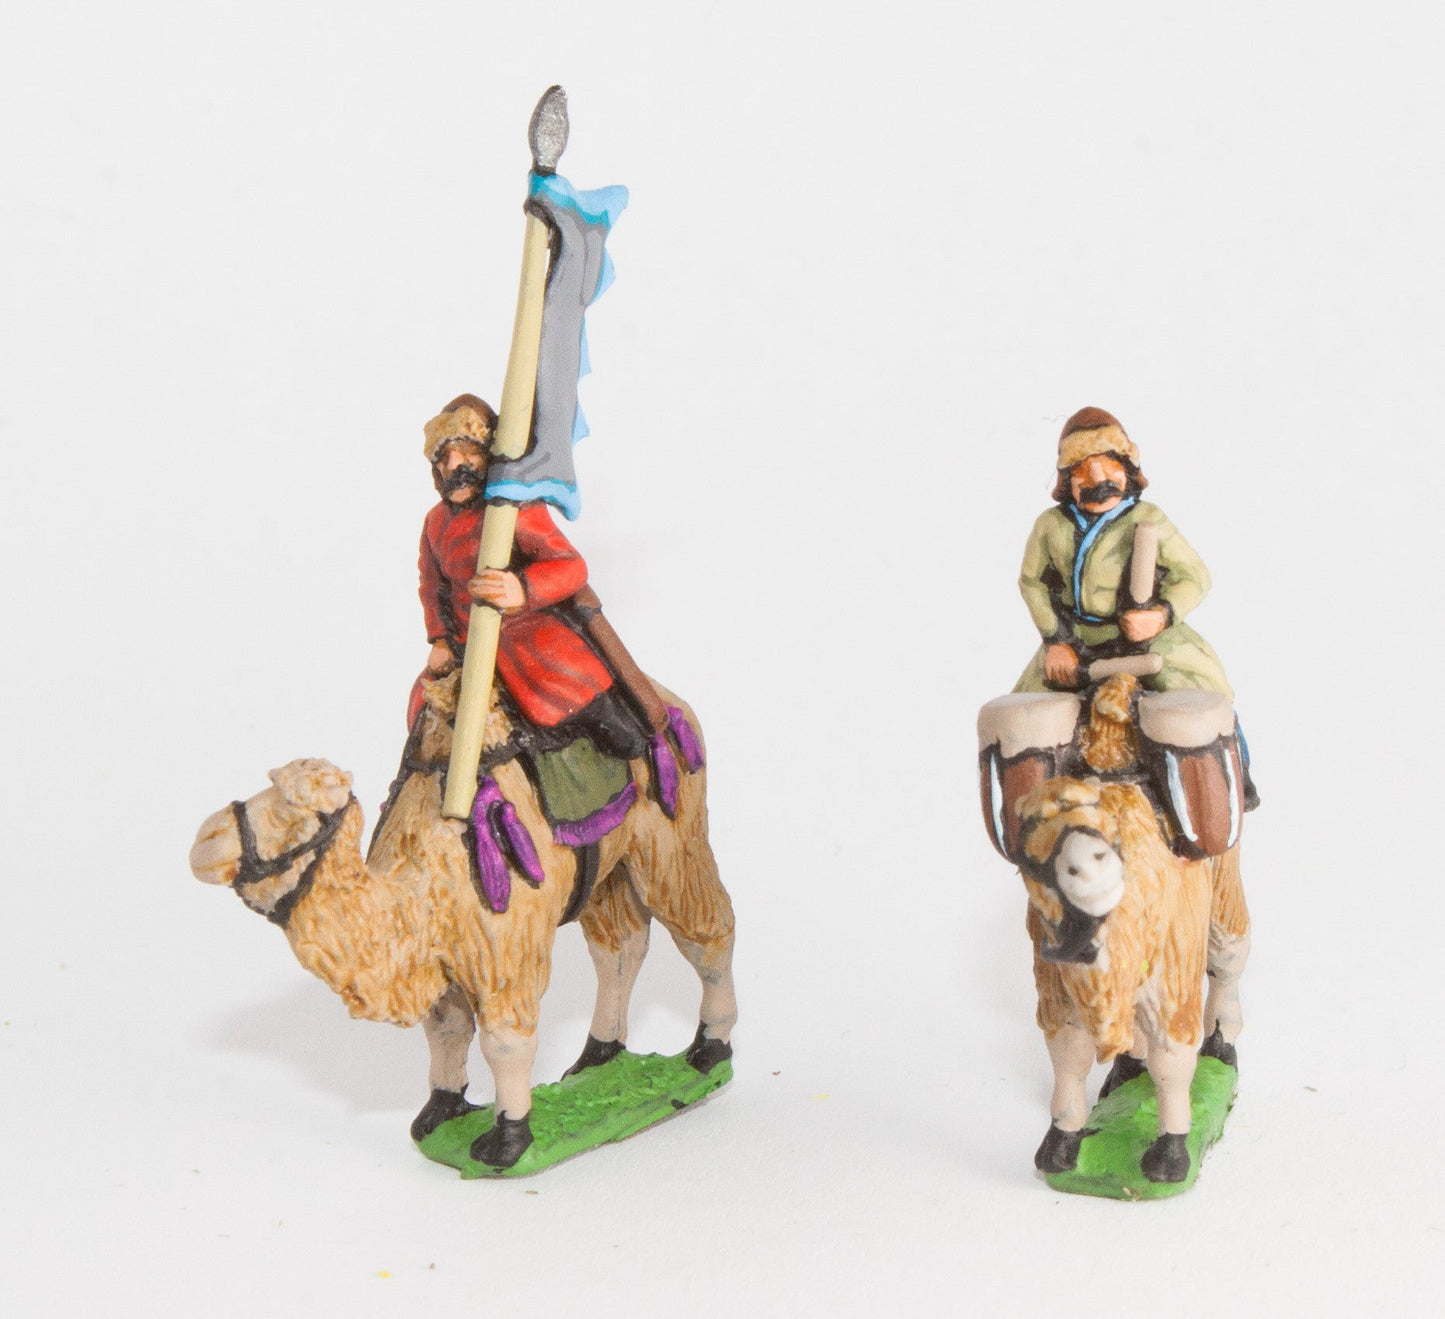 Mongol: Command: Camel Drummer & Camel Standard Bearer MOA9